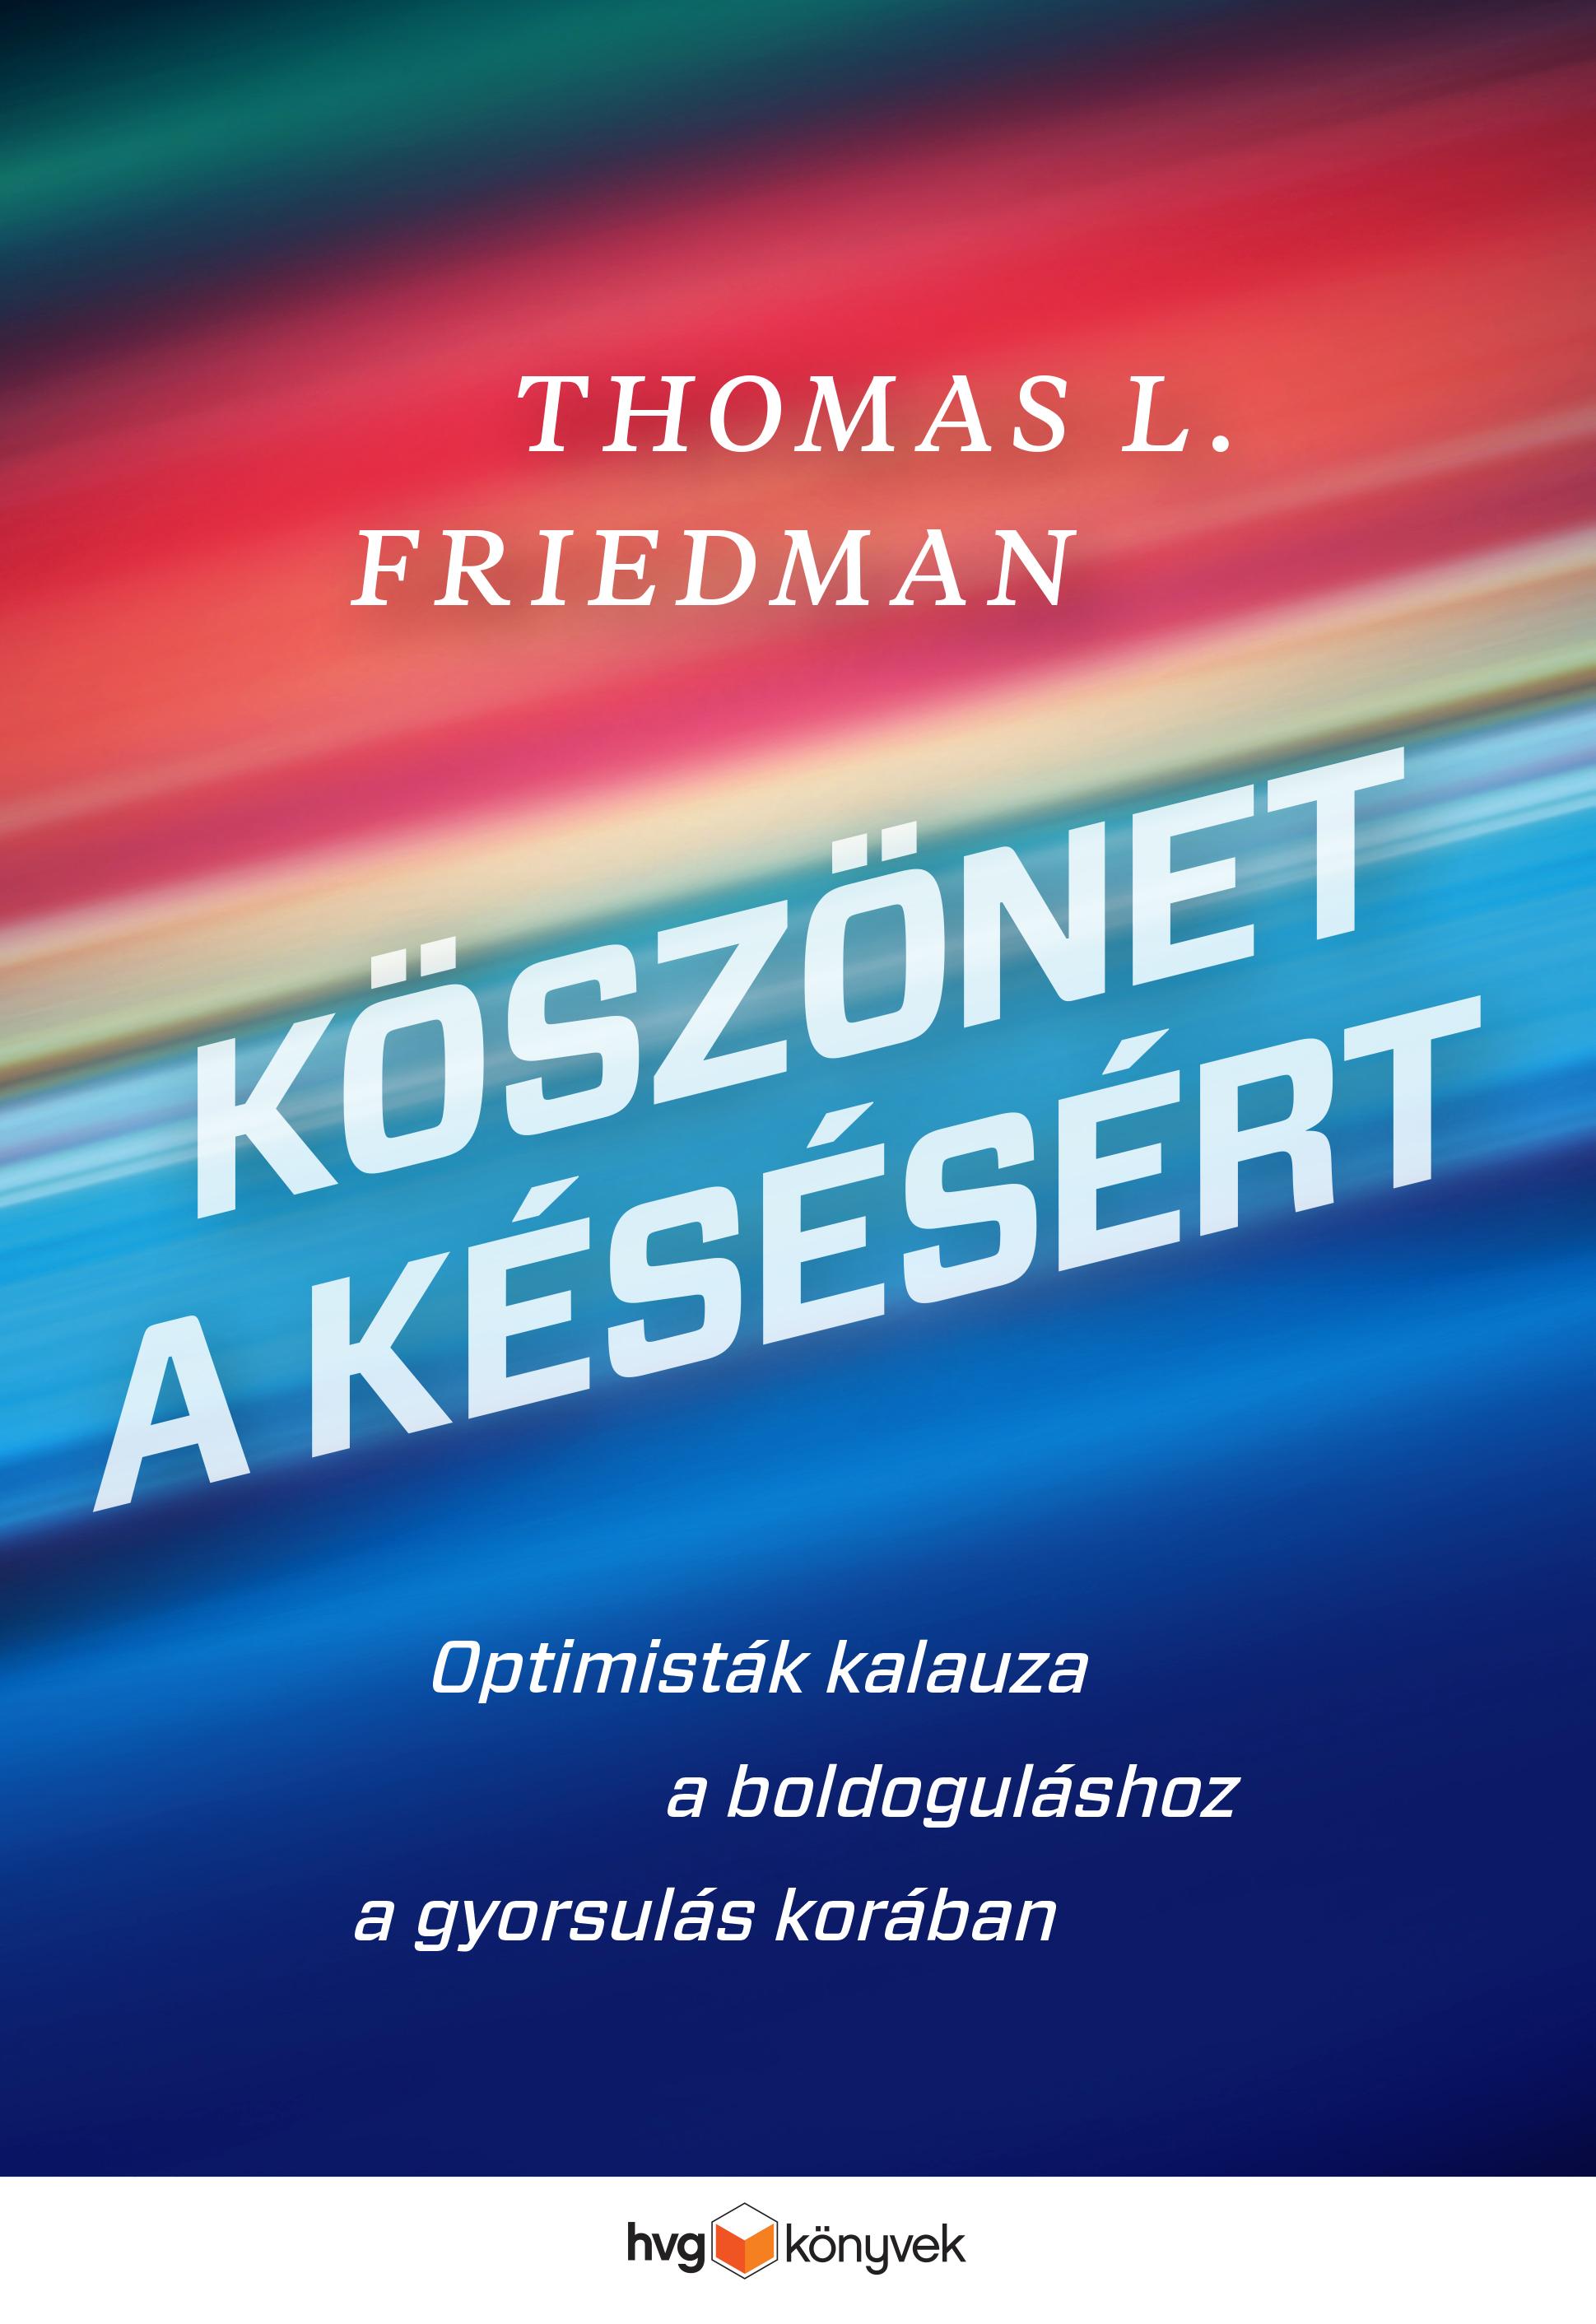 Thomas L. Friedman - Köszönet a késésért   Optimisták kalauza a boldoguláshoz a gyorsulás korában